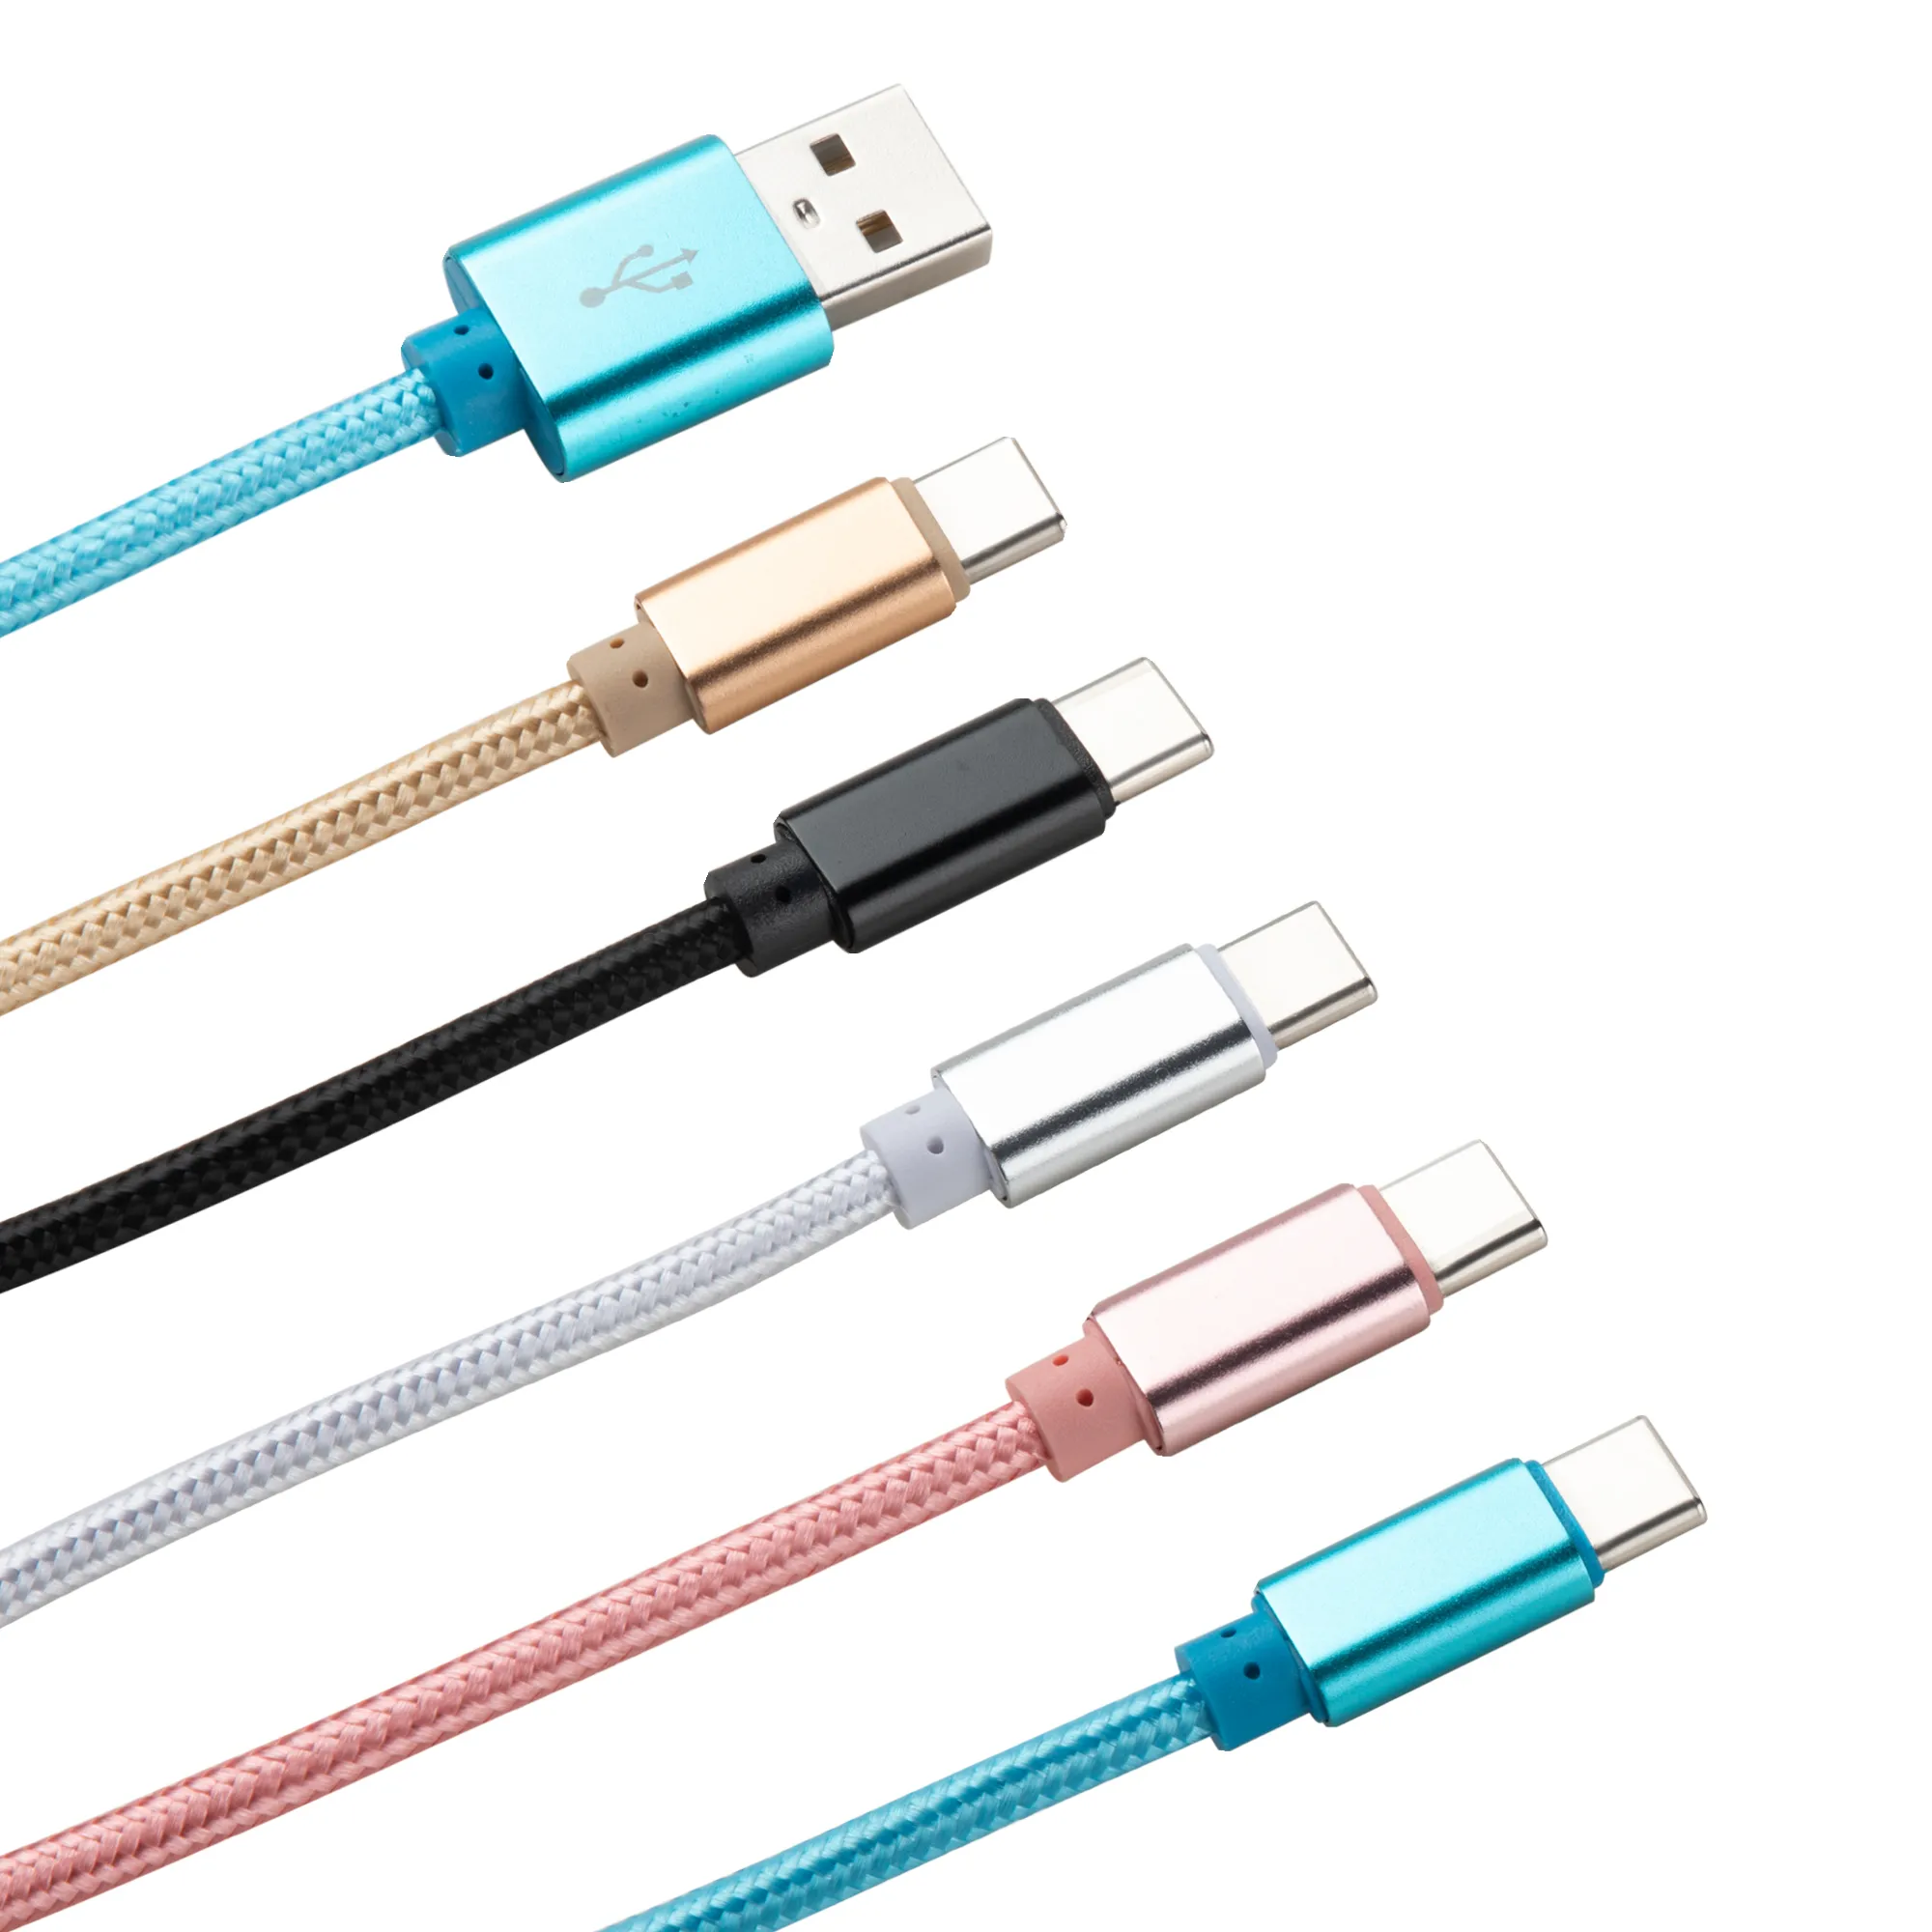 Нейлон плетеный 3 м 2 м 1 м кабелей кабелей данных типа C Micro USB зарядное кабель быстрого зарядного устройства для Samsung HTC Xiaomi Android смартфоны